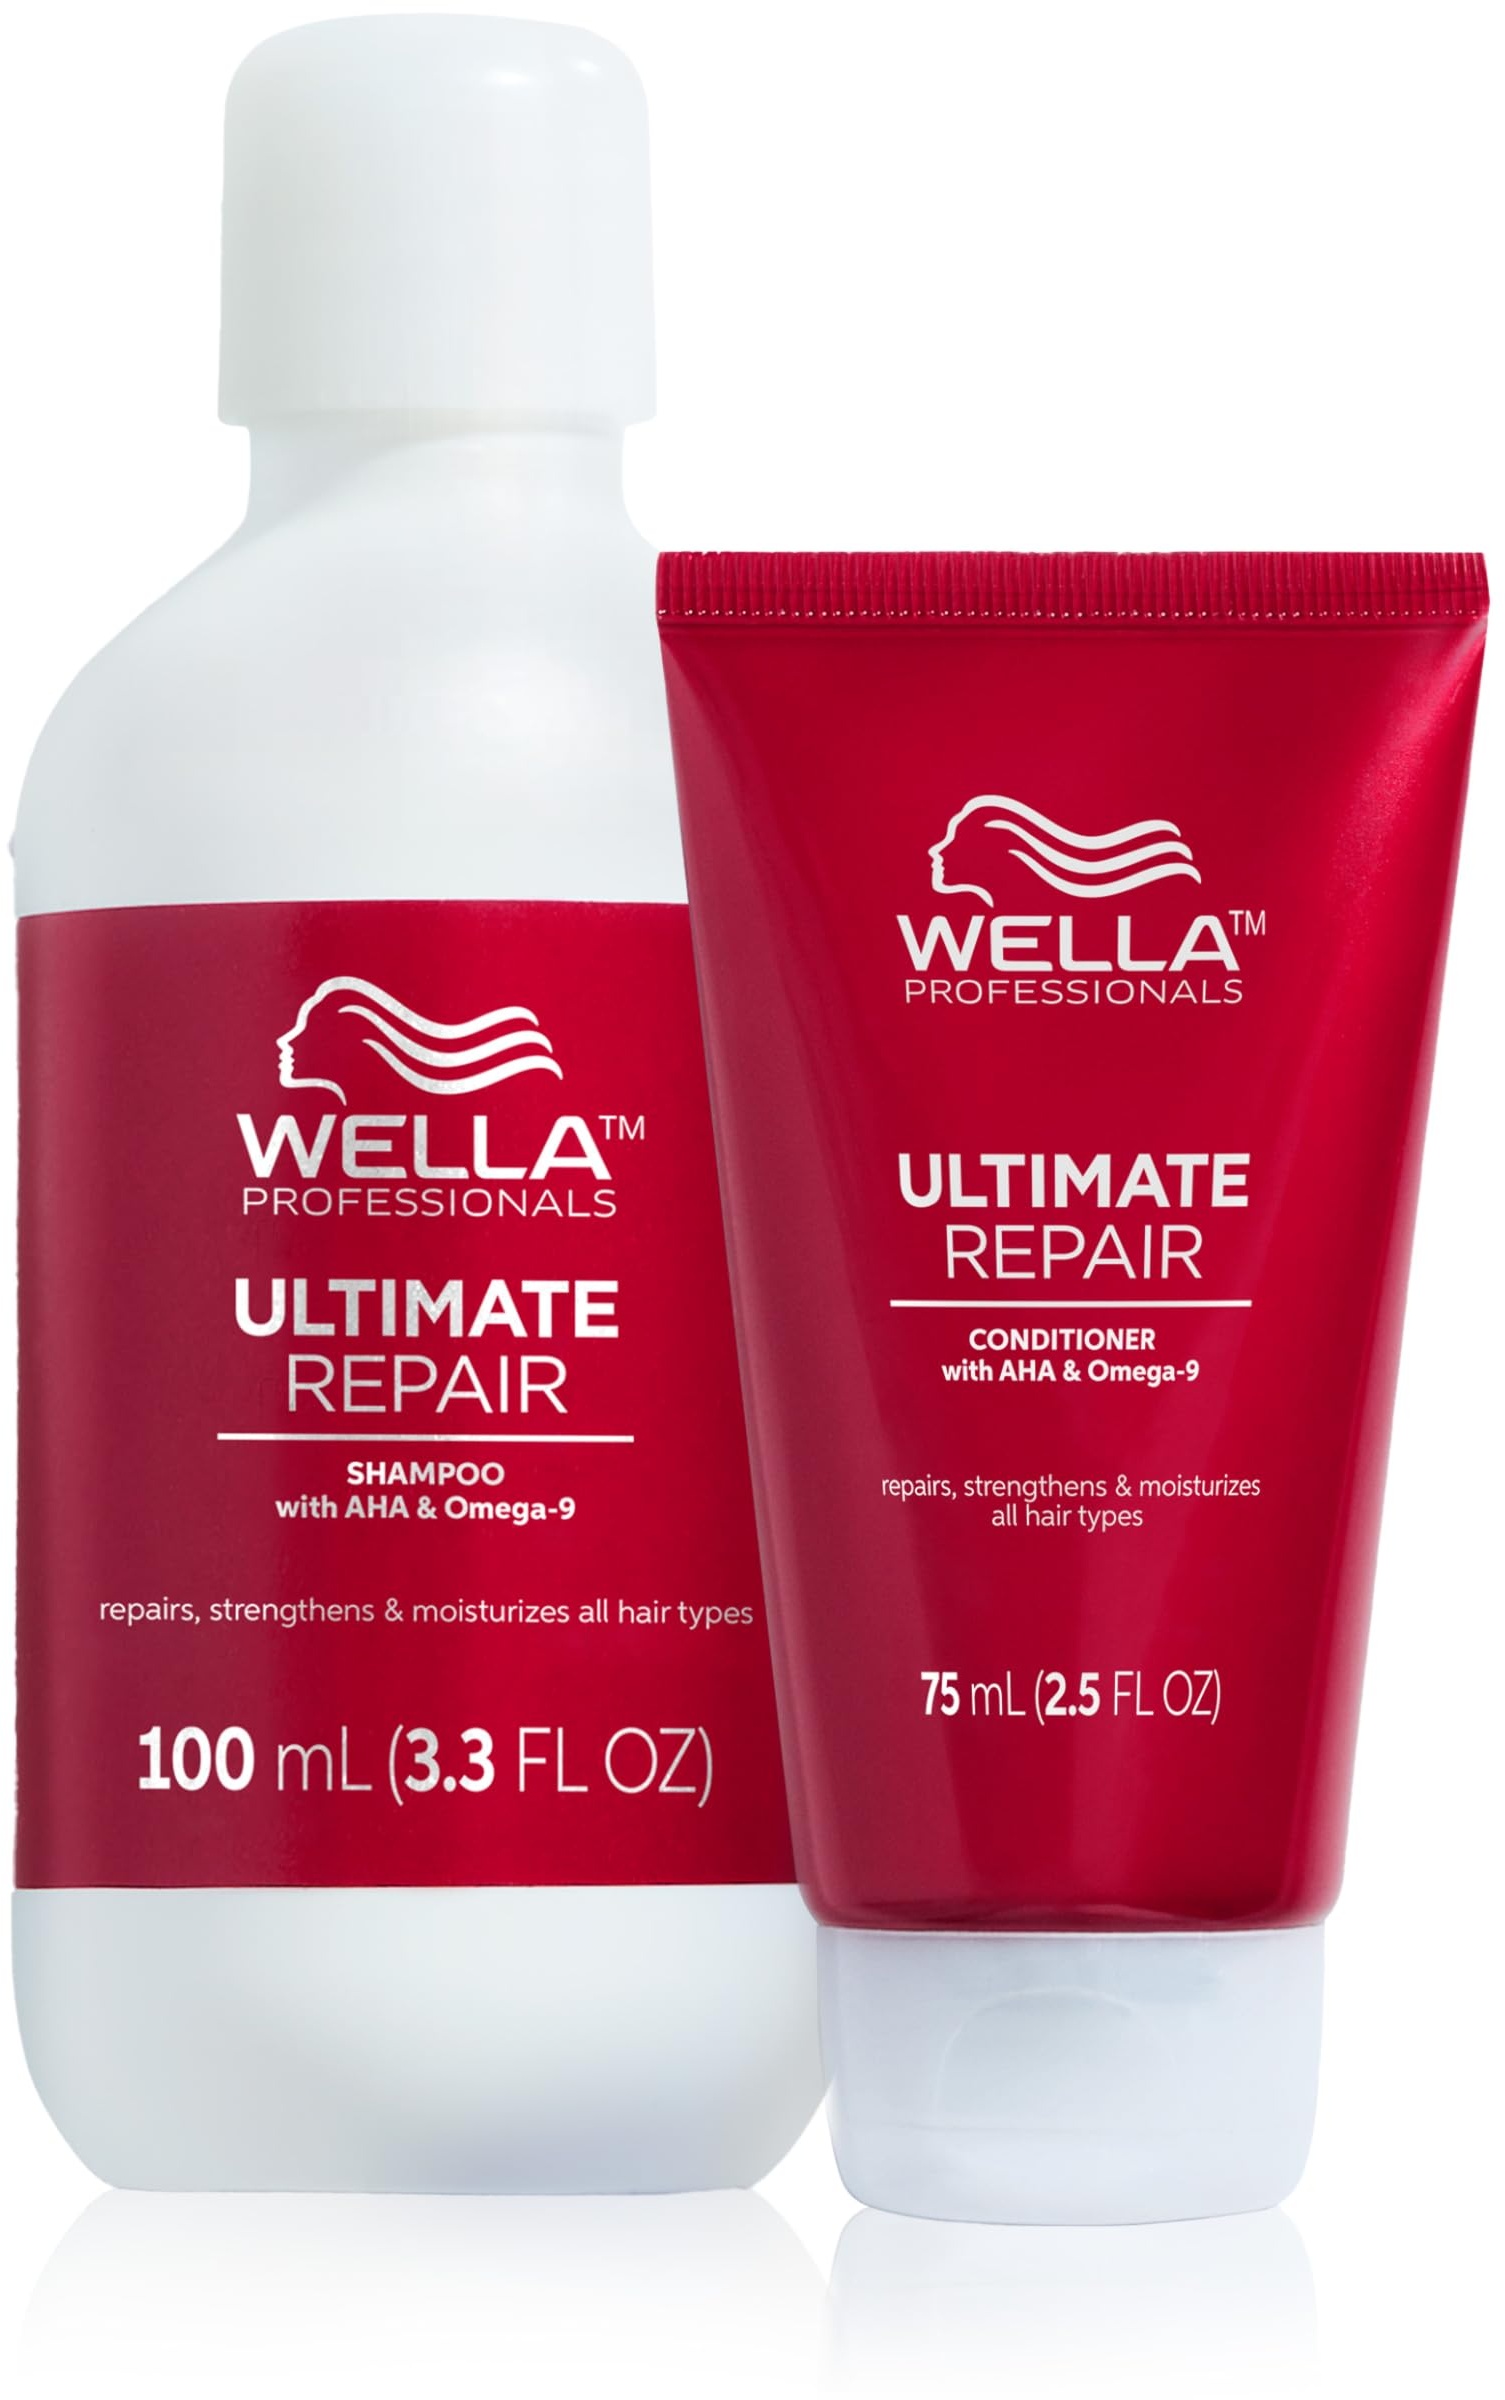 Wella Professionals Ultimate Repair Haarpflege in Reisegröße – Repair Shampoo zur Tiefenreinigung & reparierende Spülung mit Omega 9 – 100 ml Feuchtigkeitsshampoo & 75 ml Conditioner